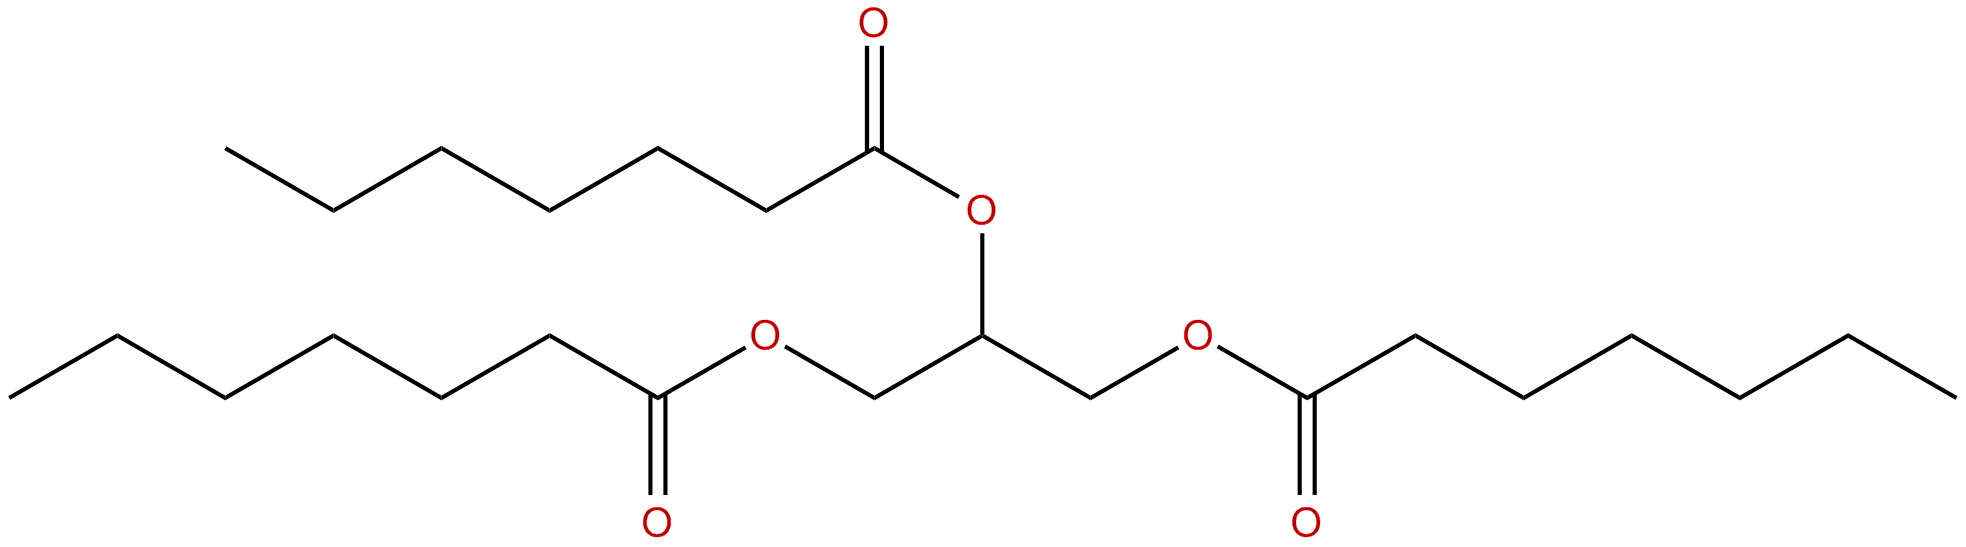 Image of glycerol triheptanoate